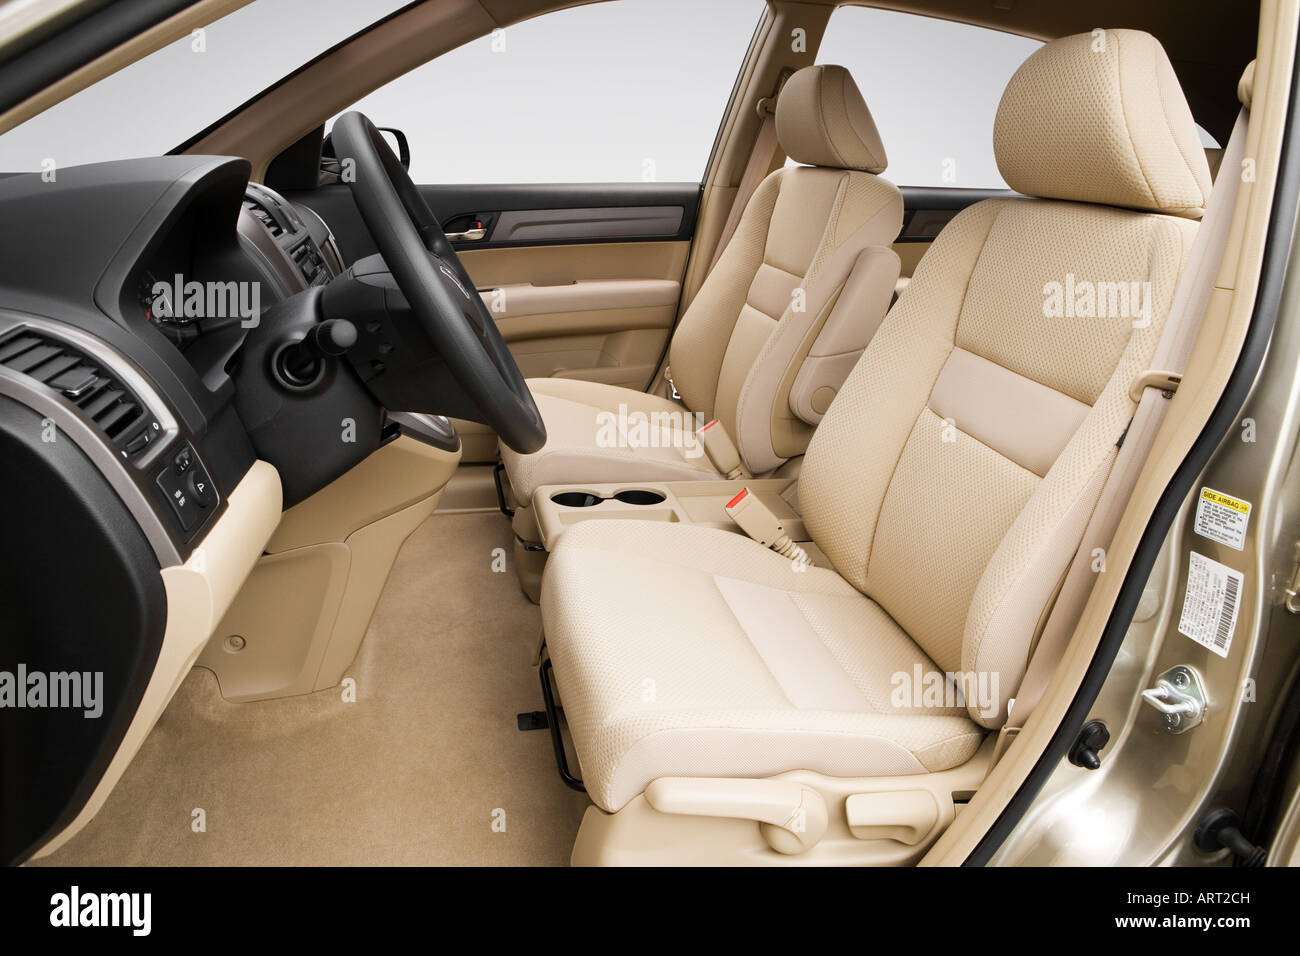 2008 Honda CR-V LX in Beige - vordere Sitze Stockfotografie - Alamy